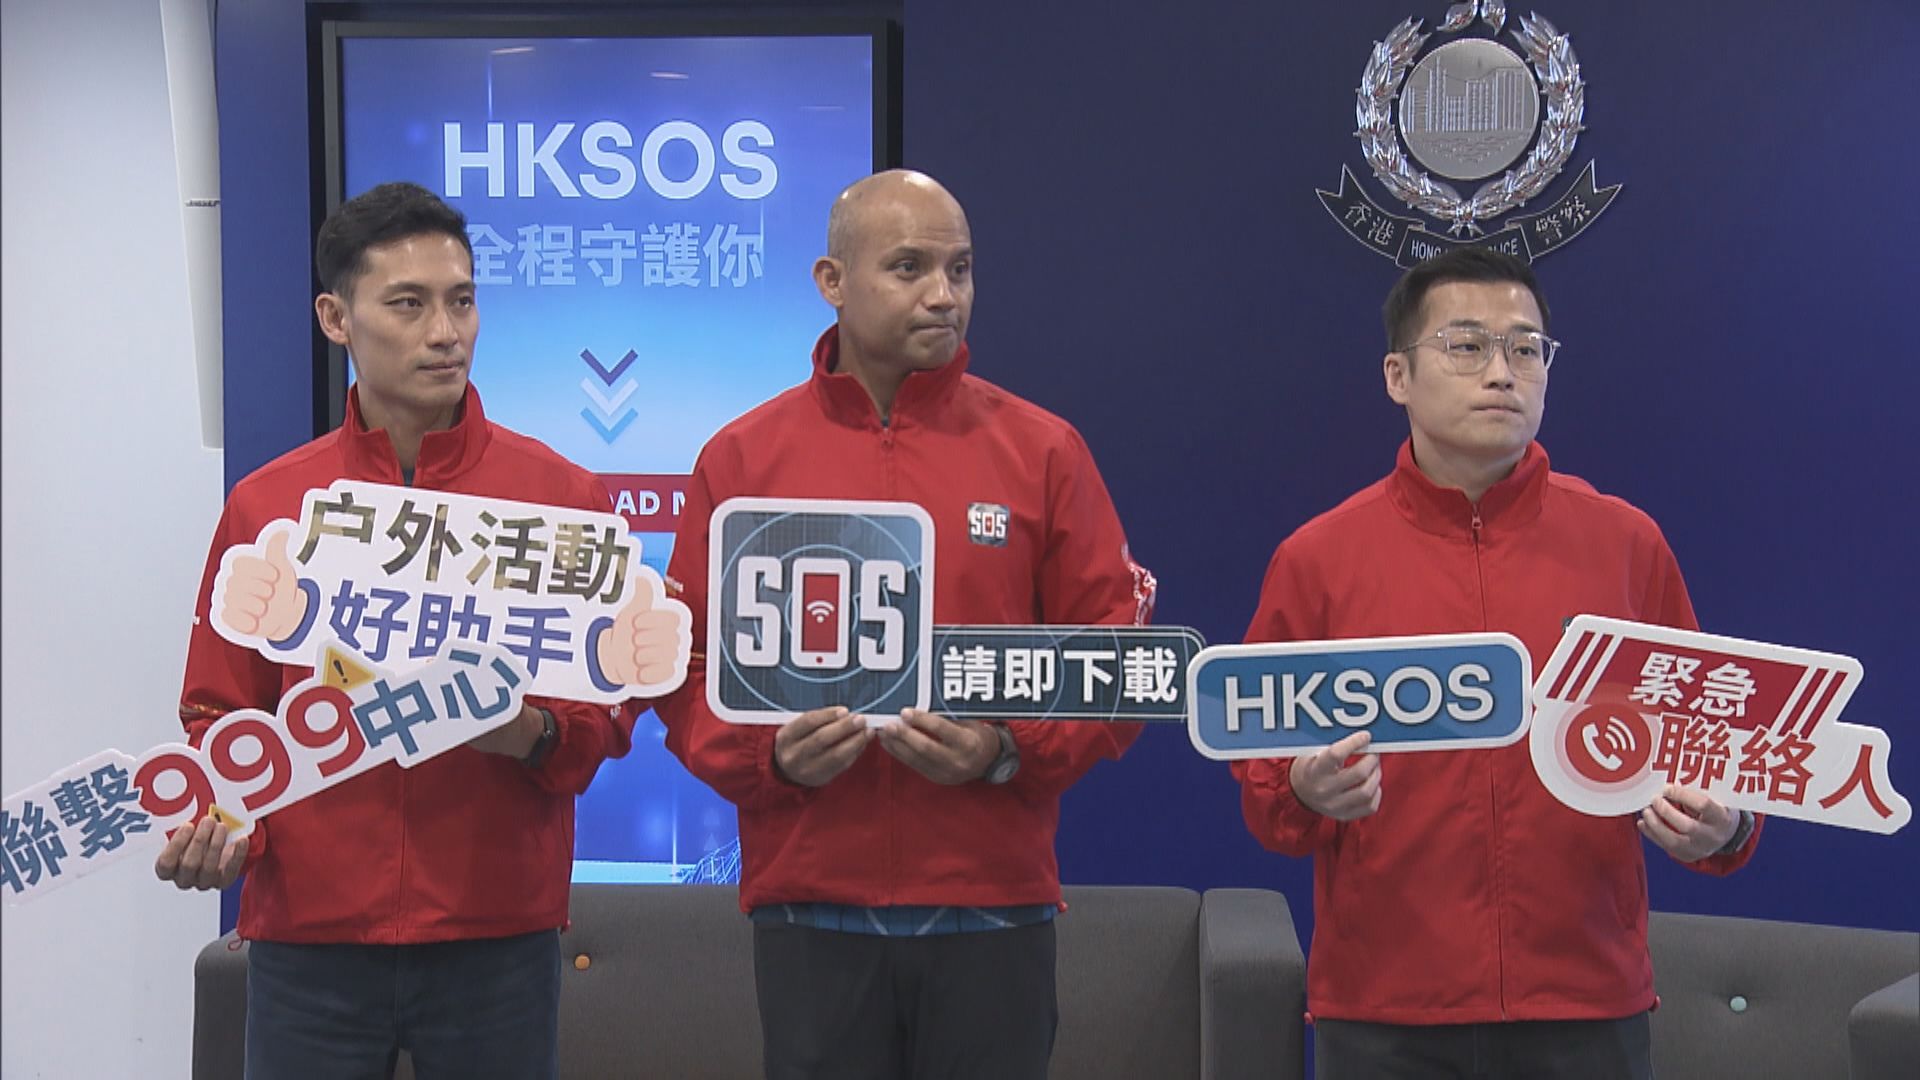 警方應用程式「HKSOS」錄逾5.7萬次下載 成功協助救出5名行山客